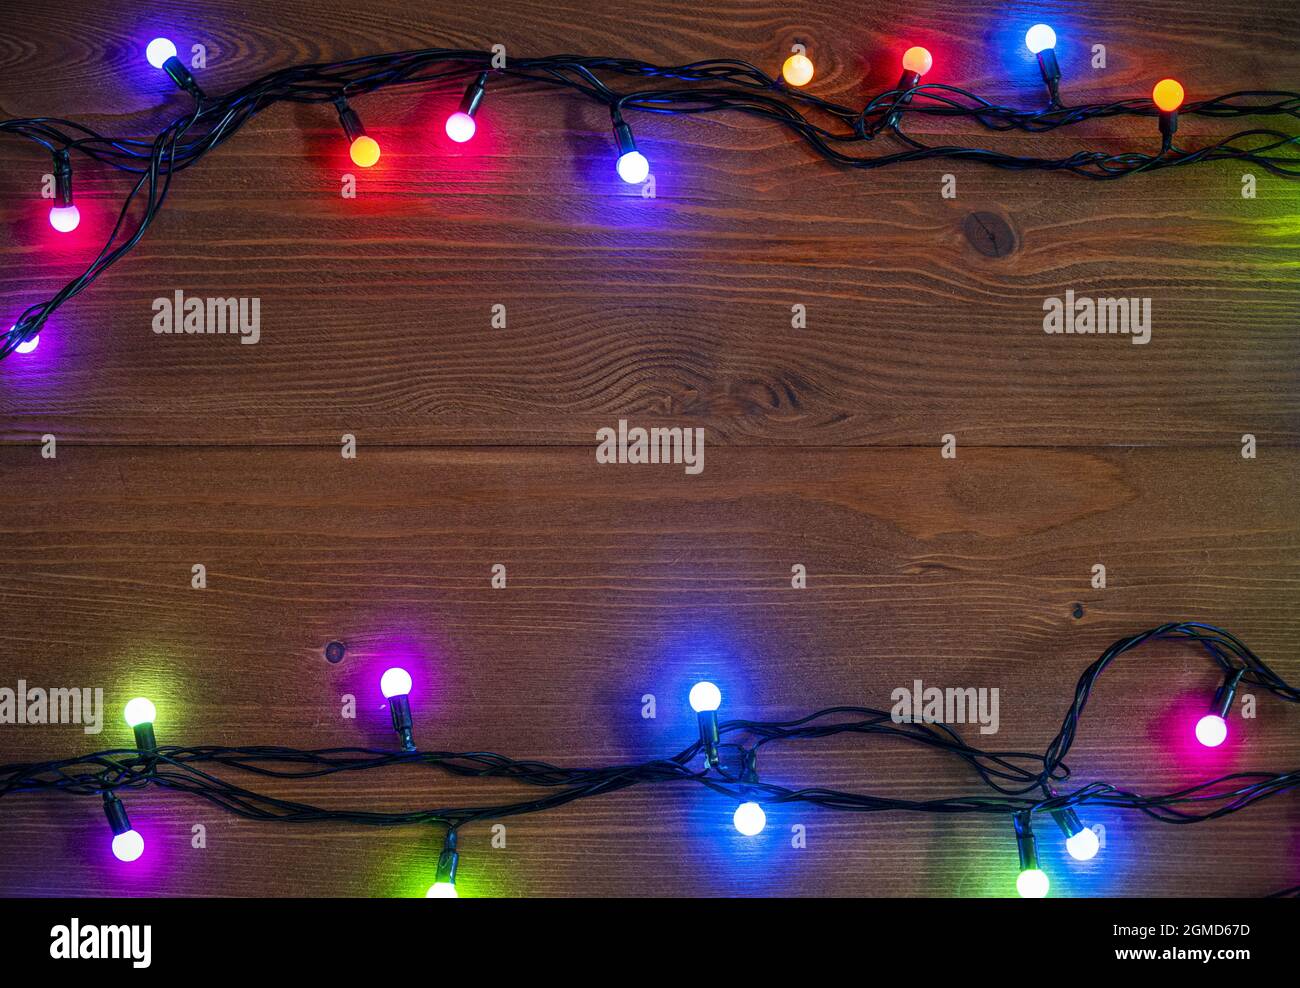 Arrière-plan de Noël avec guirlande lumineuse sur une surface en bois, lumière de guirlande de Noël, espace pour le texte, vue de dessus Banque D'Images